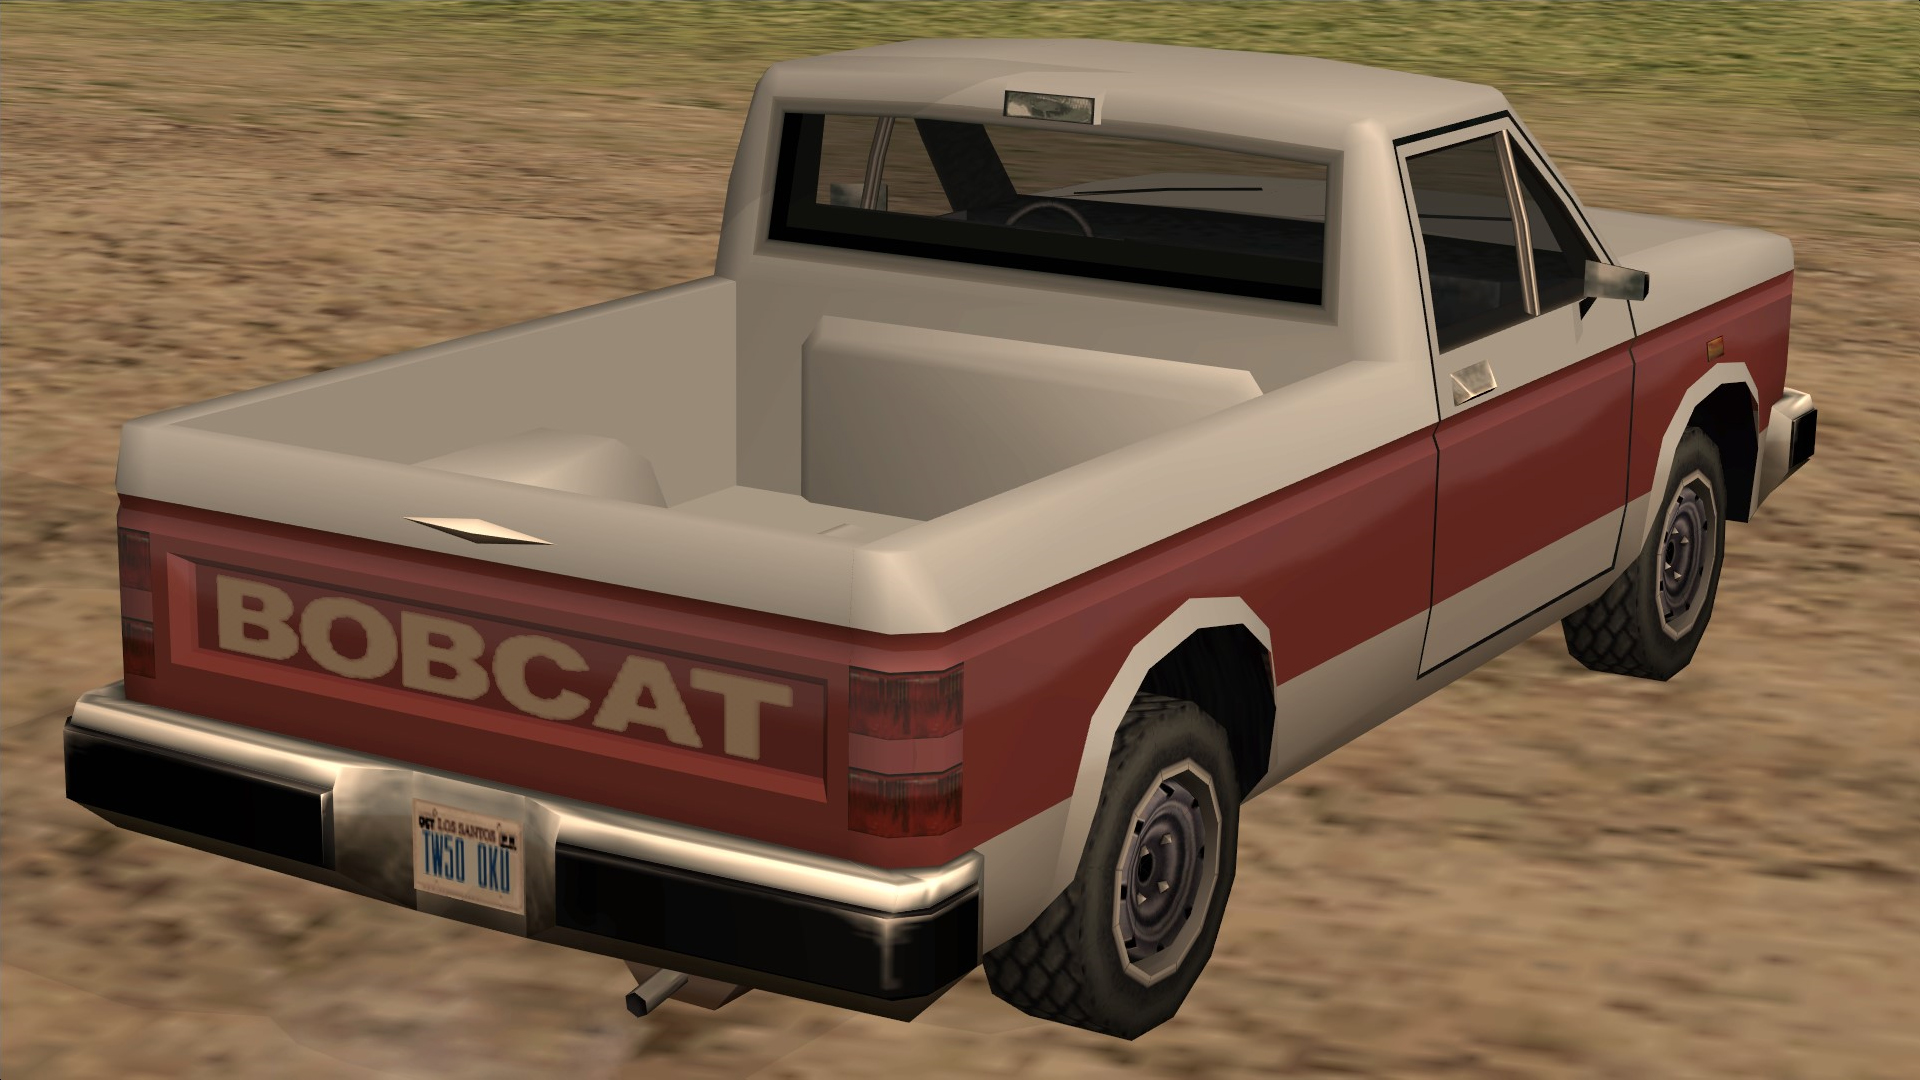 Bobcat-GTASA-rear.jpg